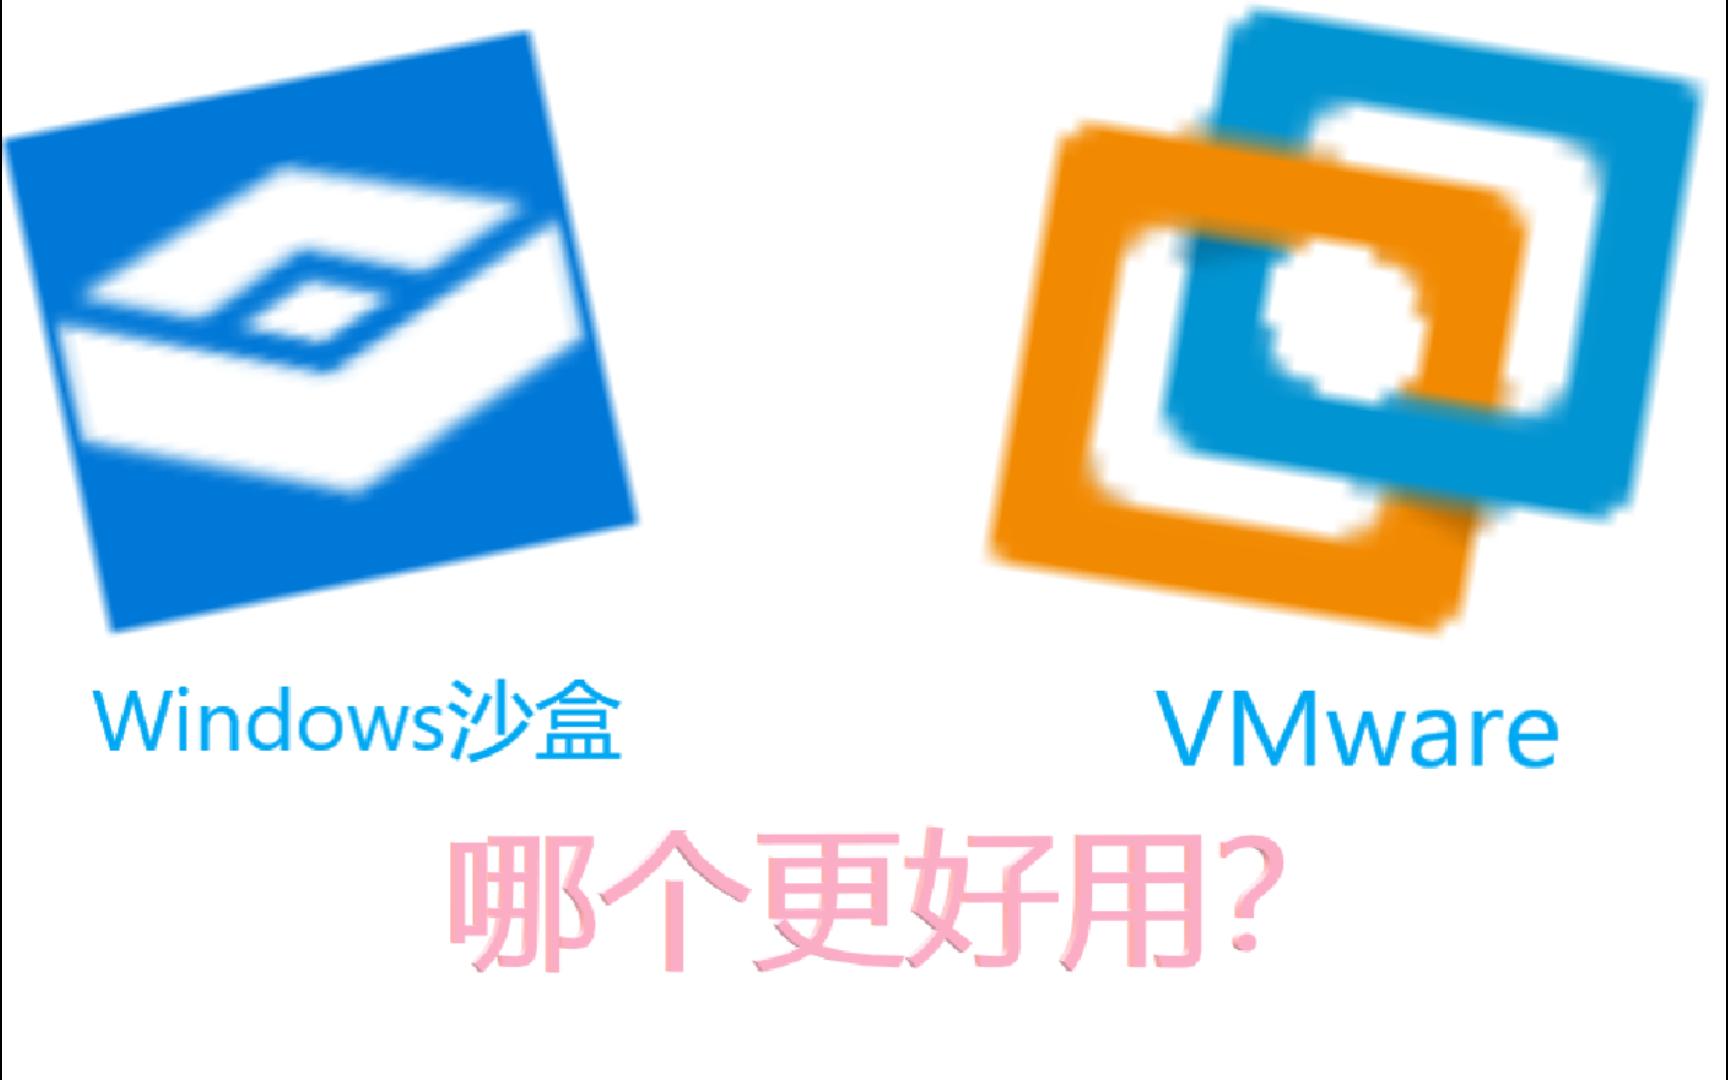 Windows沙盒和VMware哪个更好用？